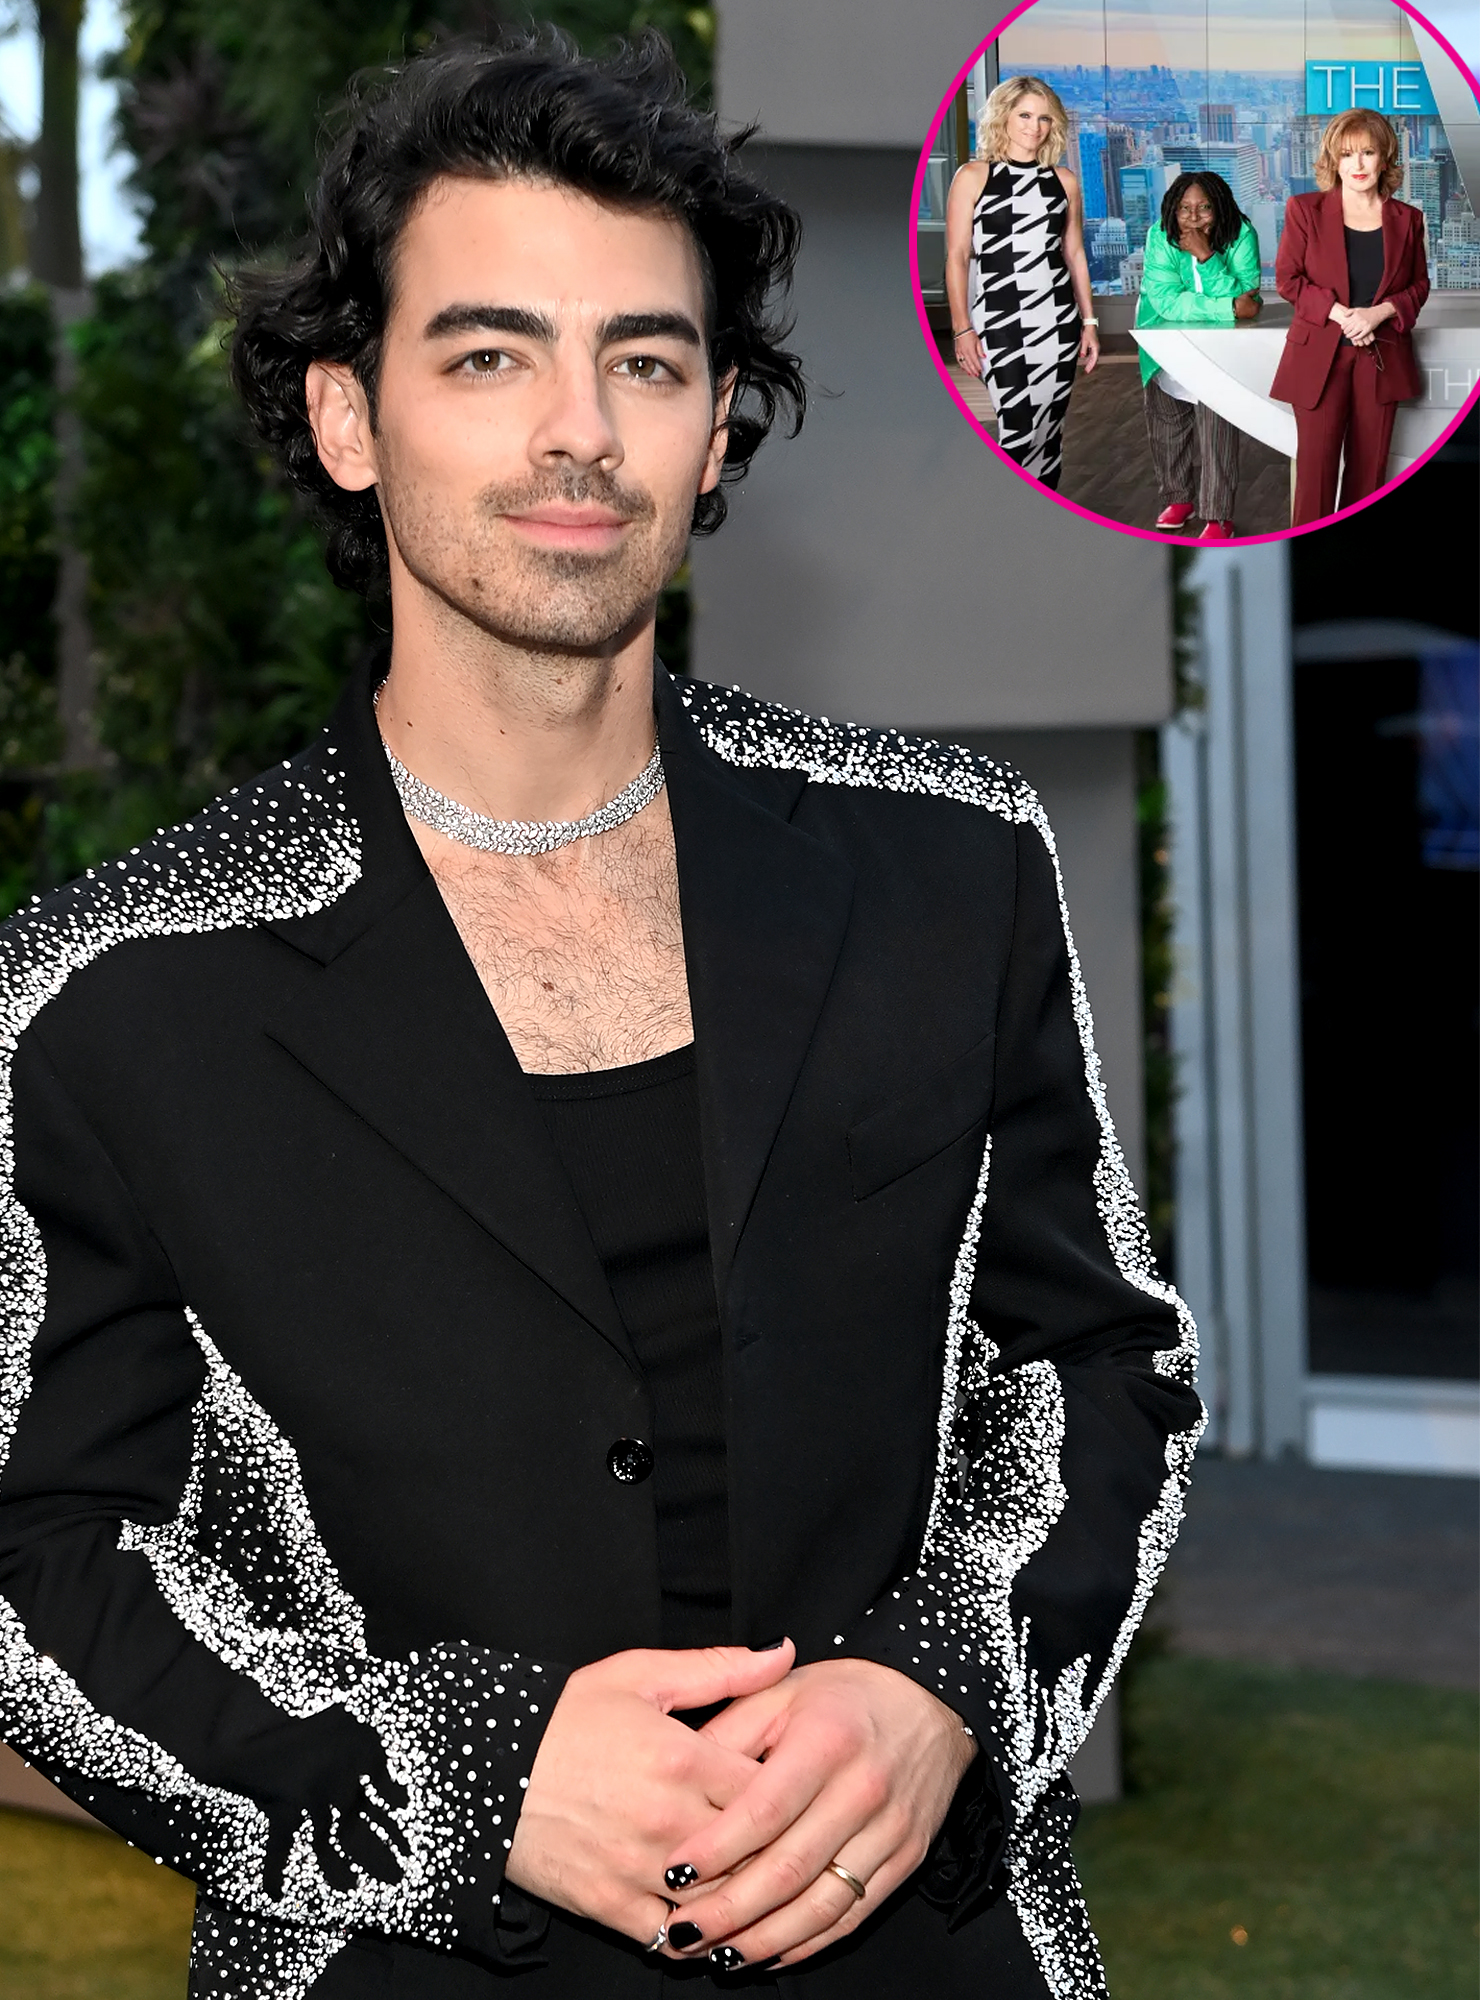 Bid on Joe Jonas and Sophie Turner's wedding ring sweet wrapper